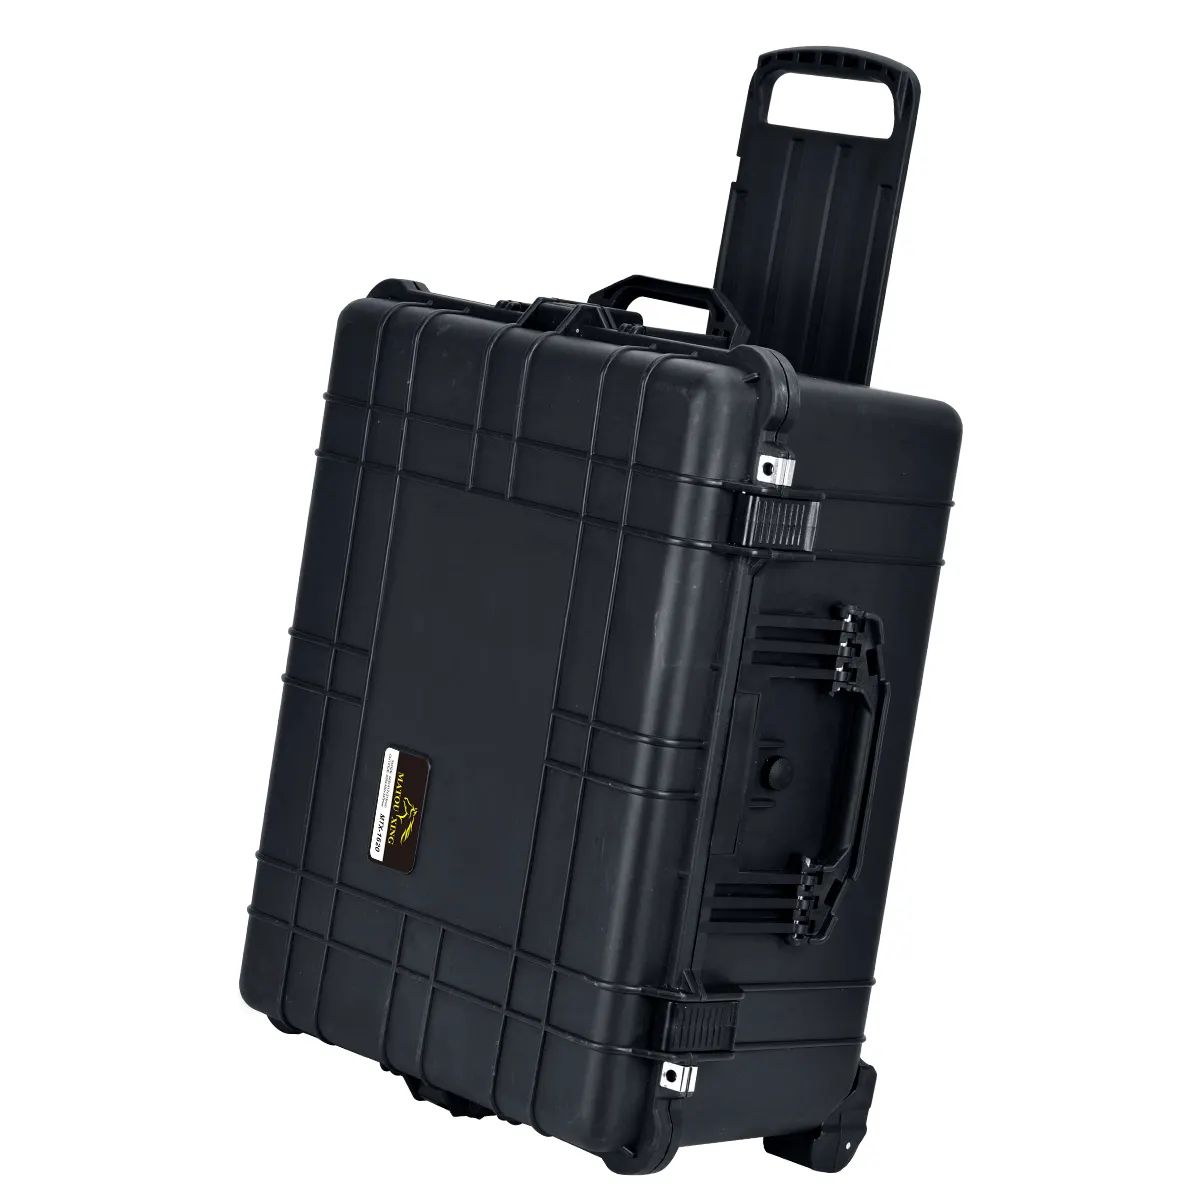 Custodia protettiva impermeabile portatile scatola rigida per fotocamera con impugnatura retrattile e ruote rotanti